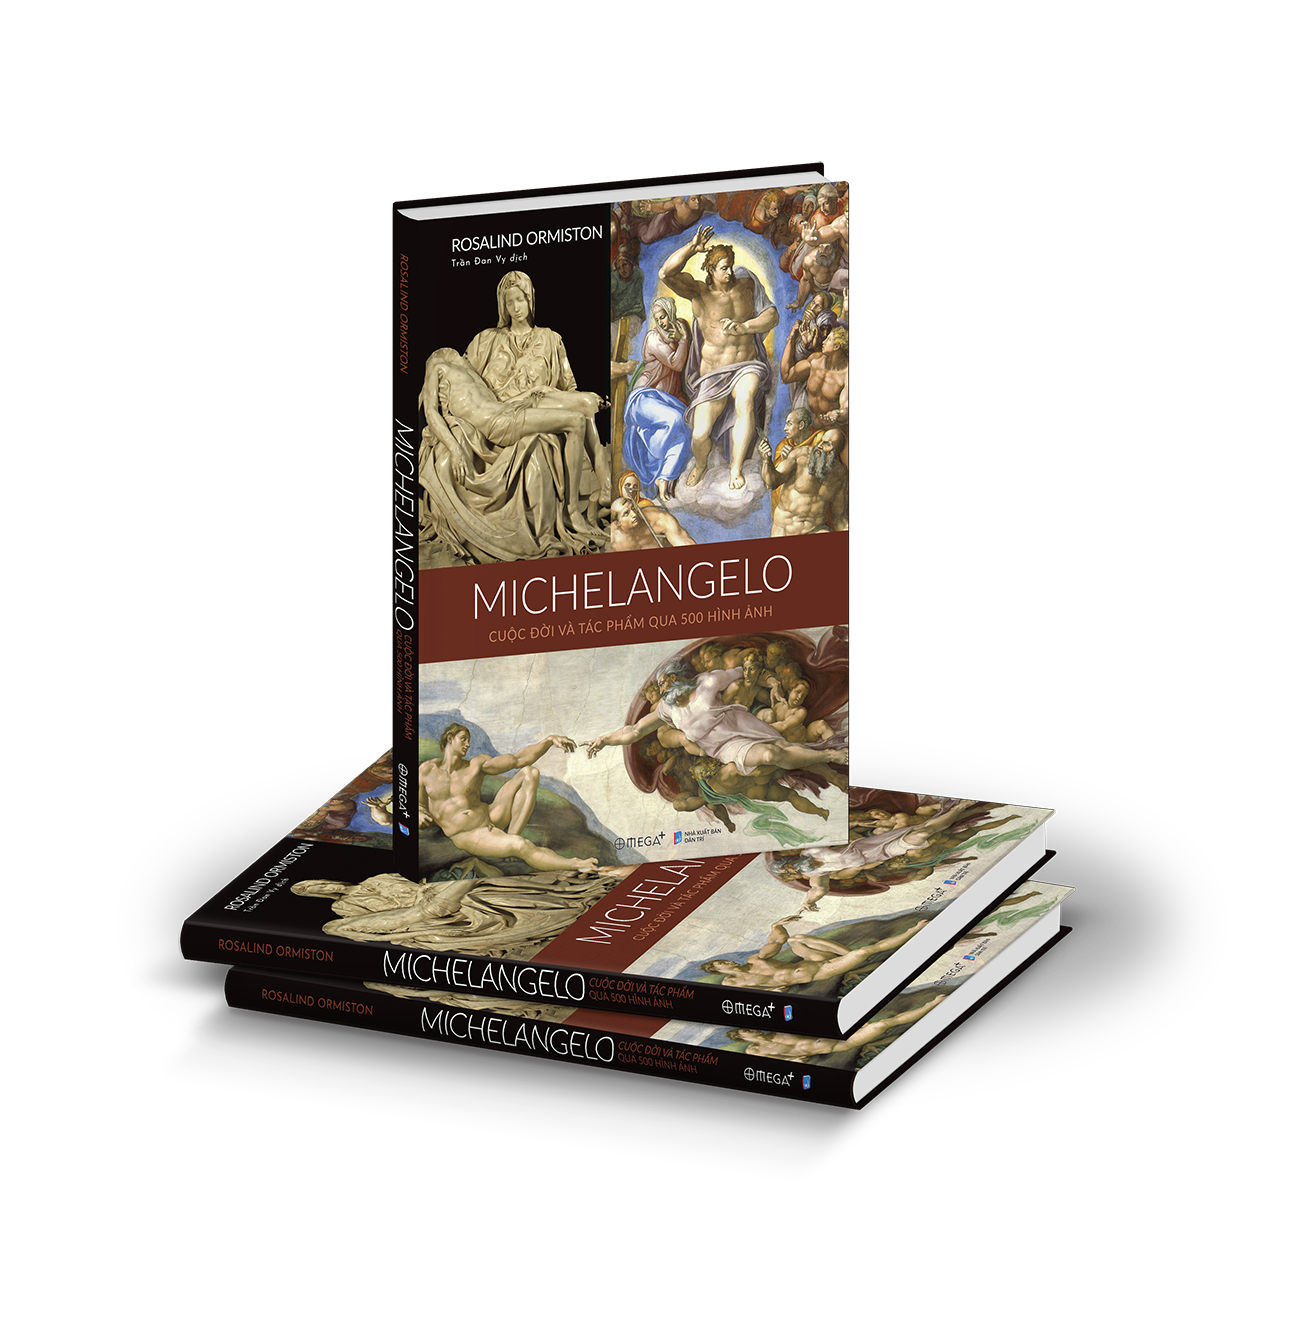 Michelangelo - Cuộc Đời Và Tác Phẩm Qua 500 Hình Ảnh PDF